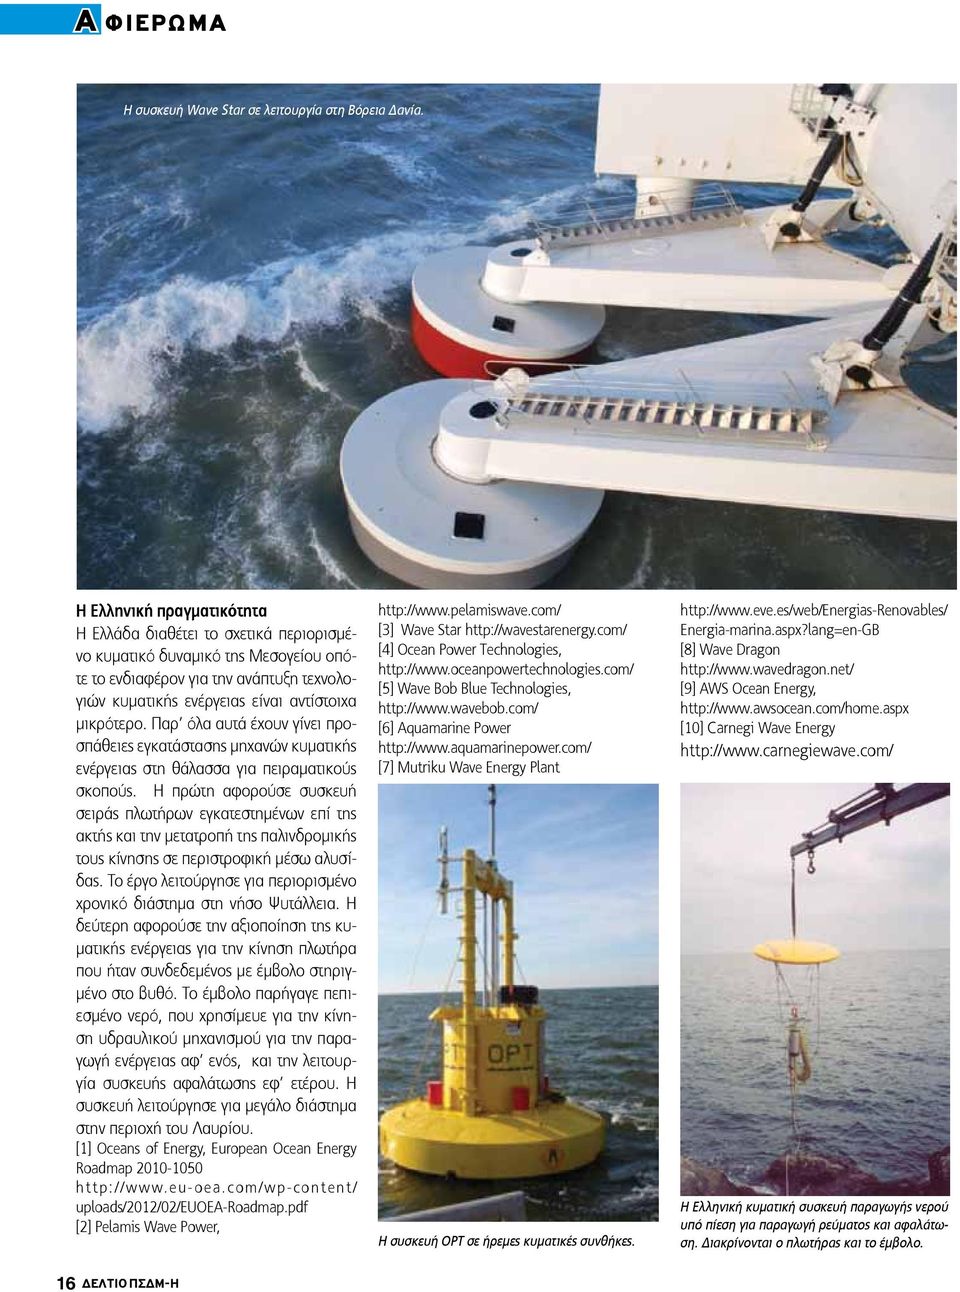 Παρ όλα αυτά έχουν γίνει προσπάθειες εγκατάστασης μηχανών κυματικής ενέργειας στη θάλασσα για πειραματικούς σκοπούς.